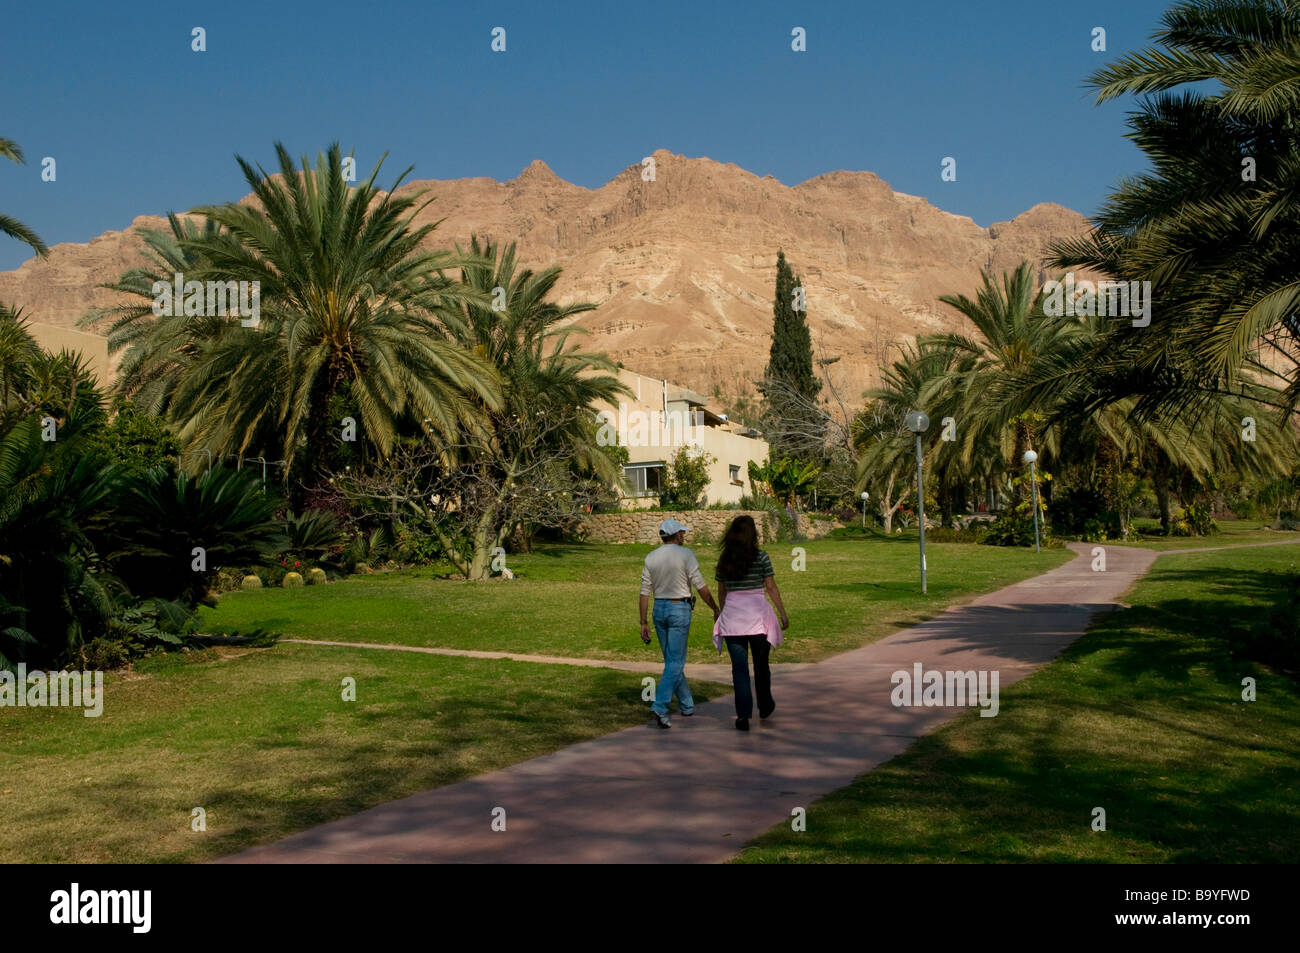 People walking in Kibbutz Ein Gedi near Dead Sea Israel Stock Photo